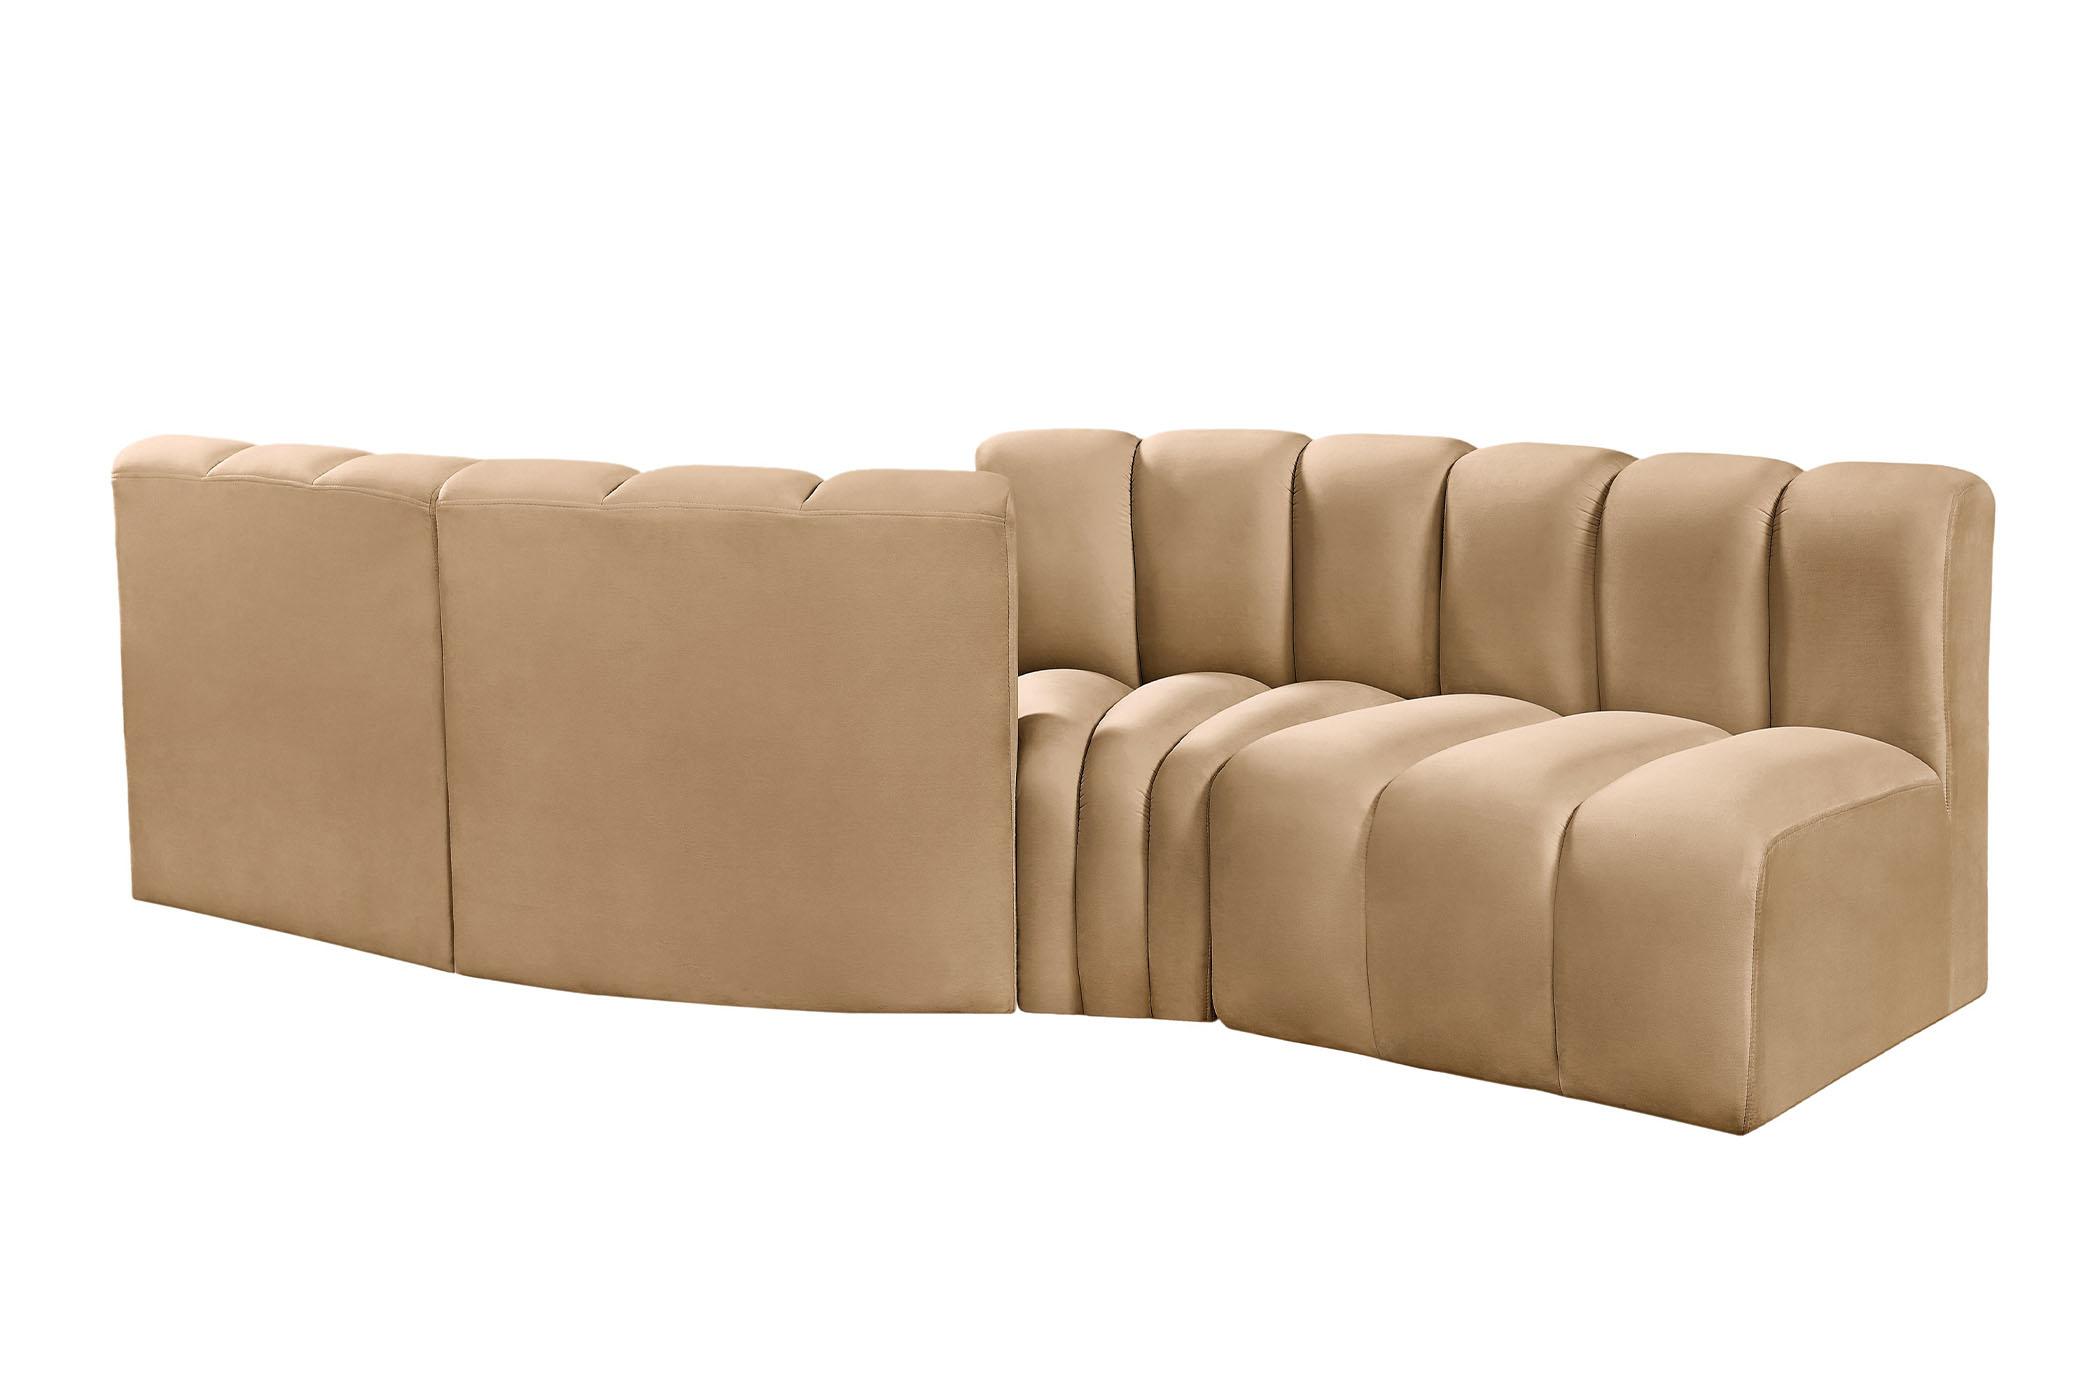 

    
103Camel-S4A Meridian Furniture Modular Sectional Sofa
